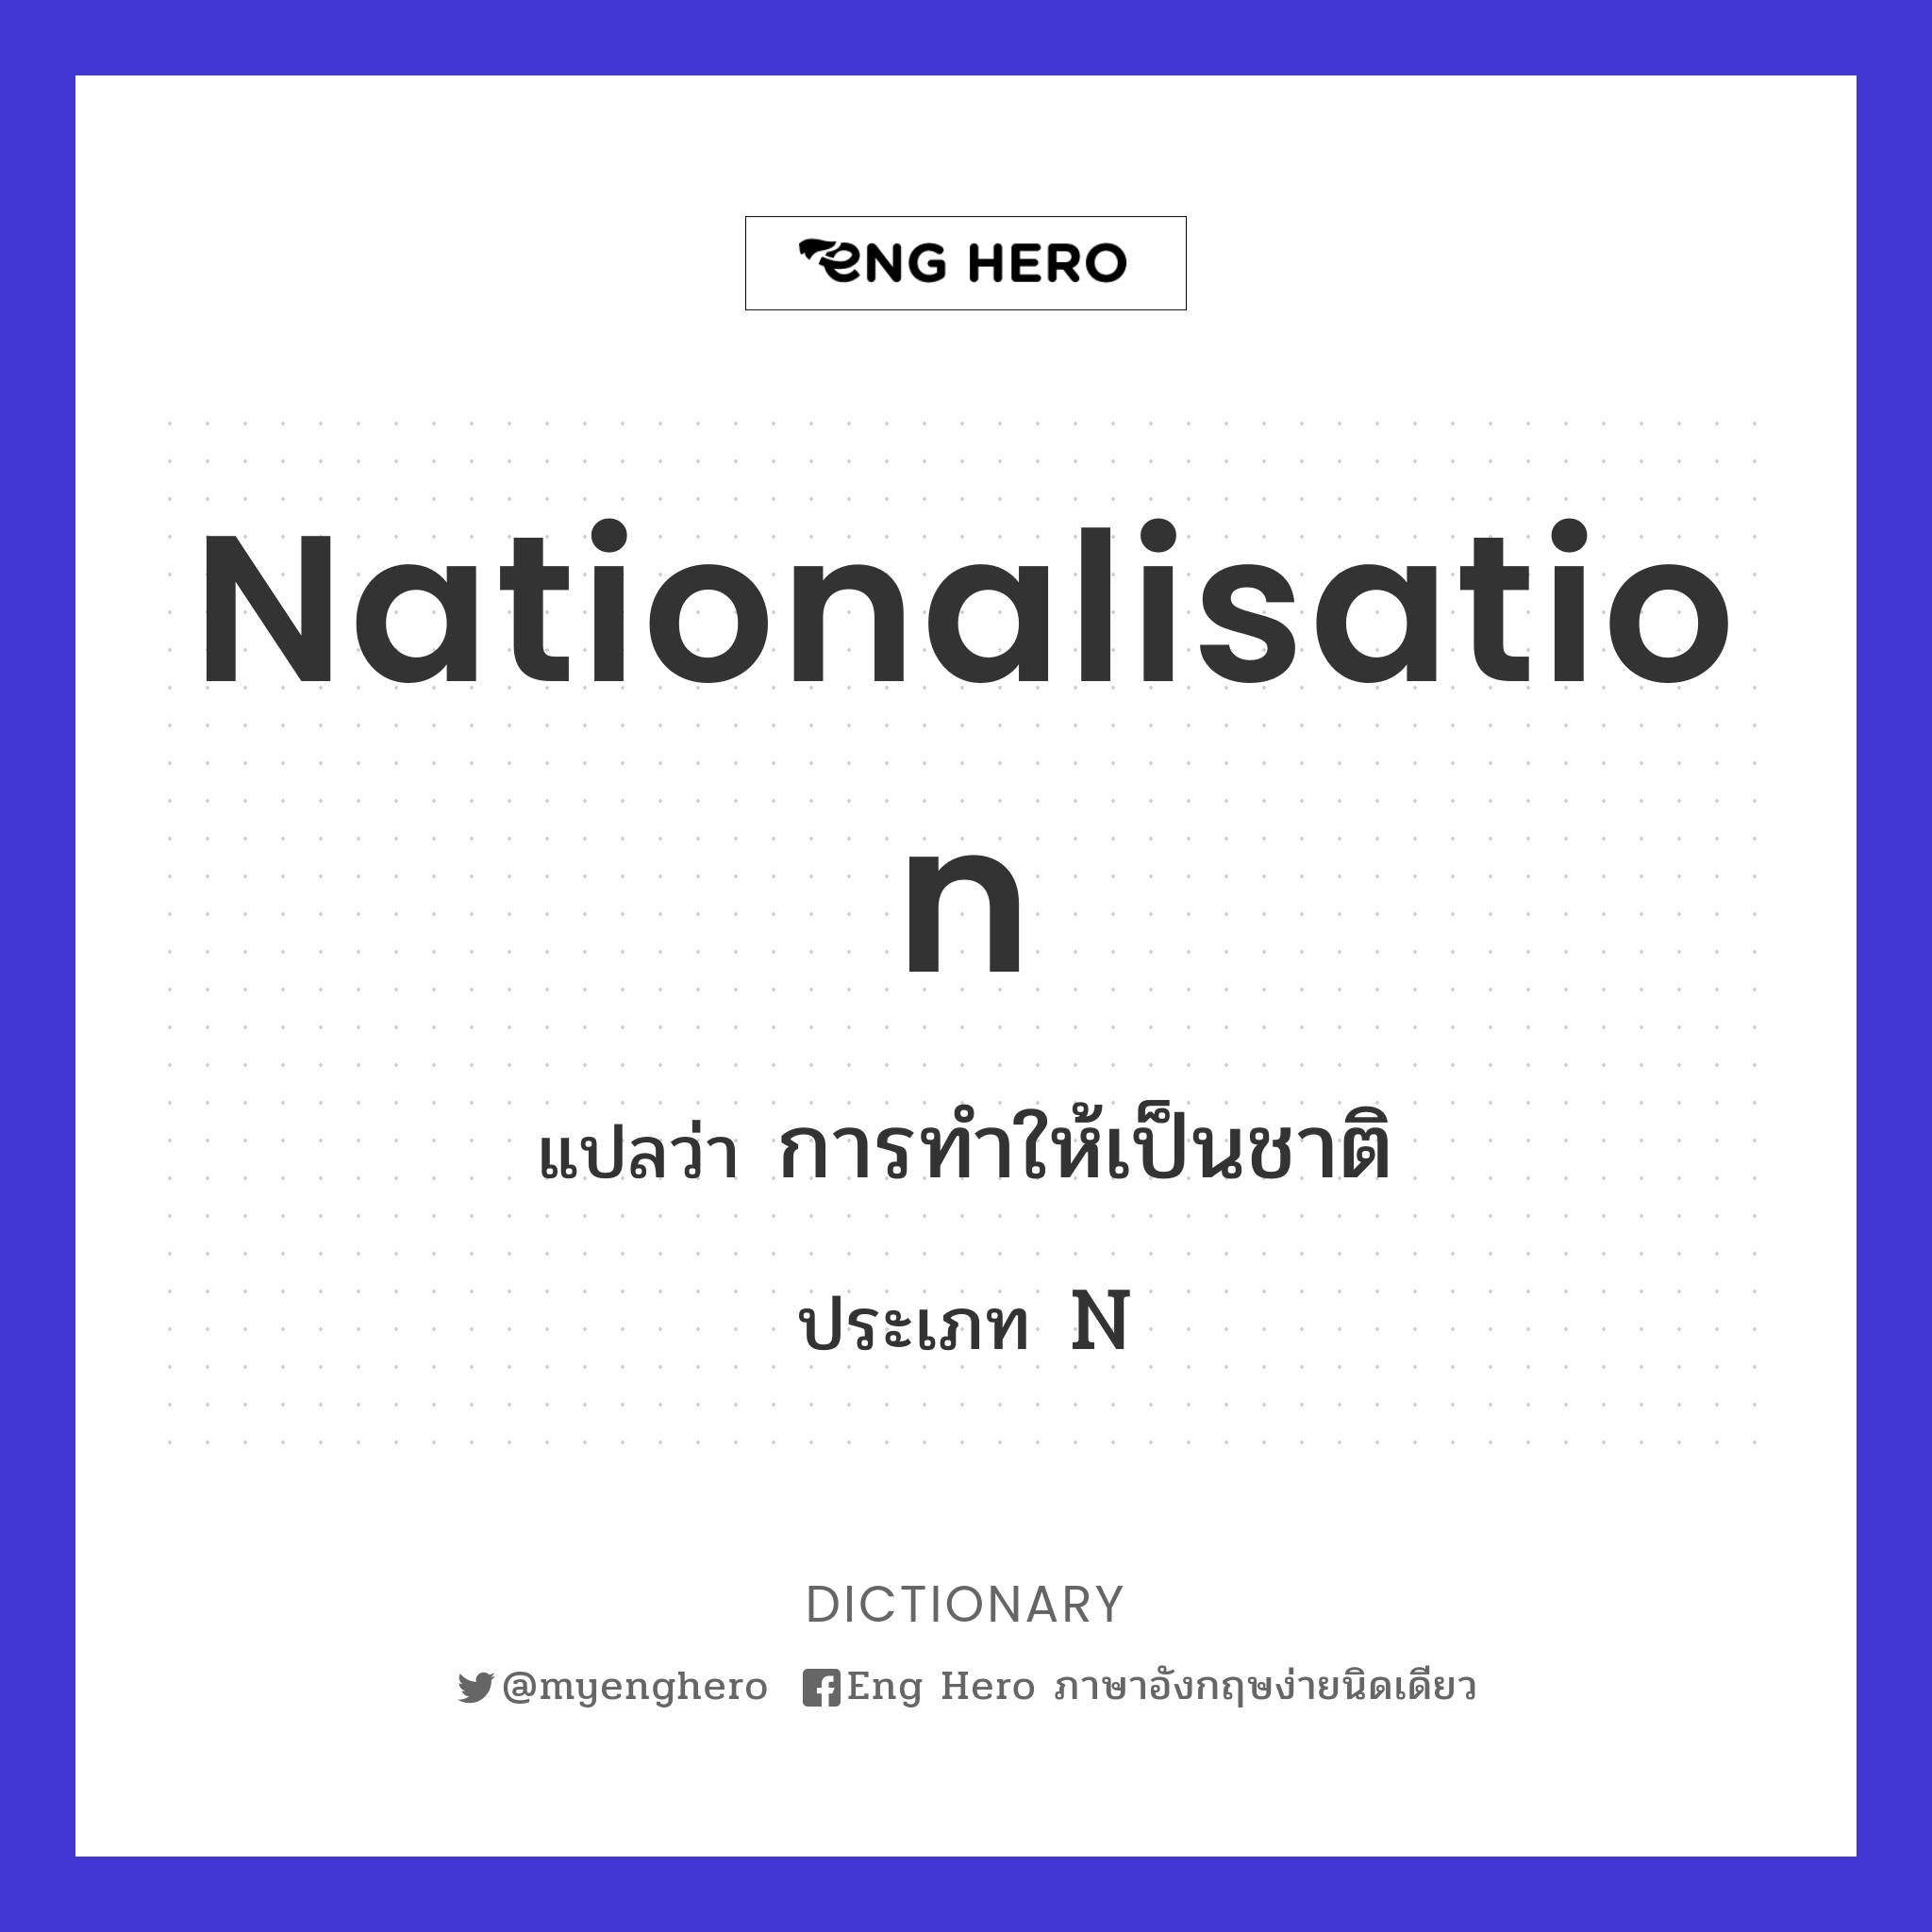 nationalisation